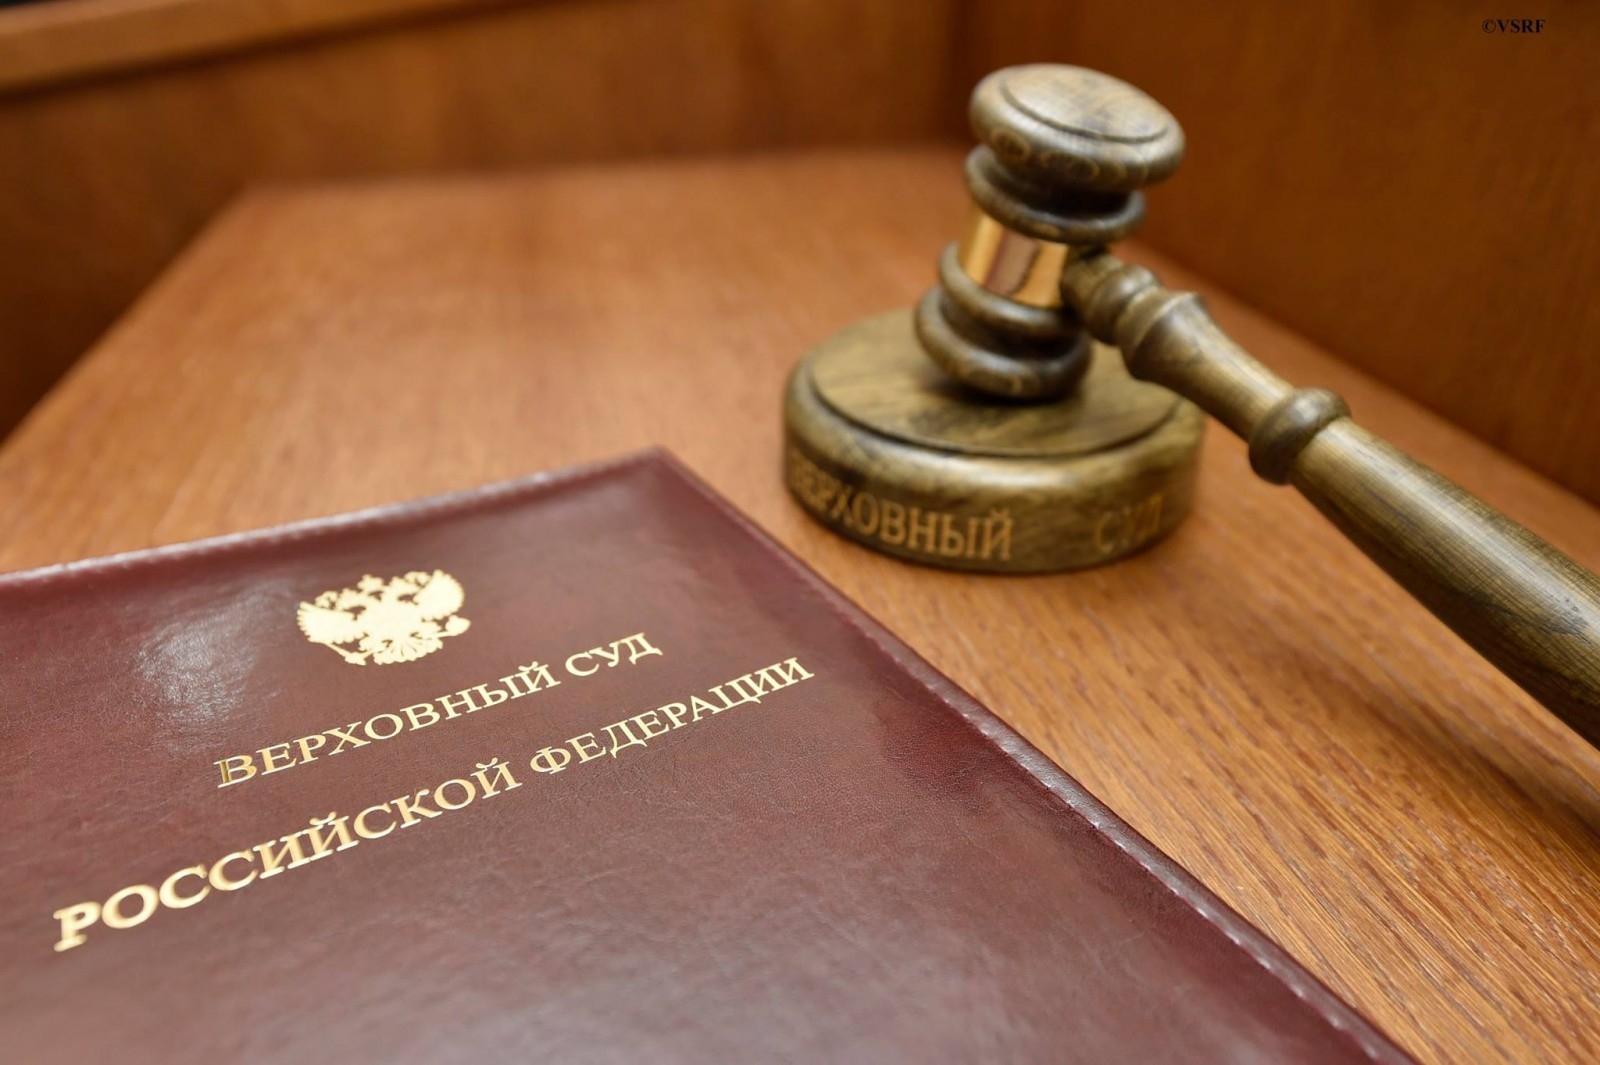 Пленум Верховного Суда РФ обновил для судов разъяснения антимонопольного законодательства (Законы №№ 44-ФЗ и 223-ФЗ)